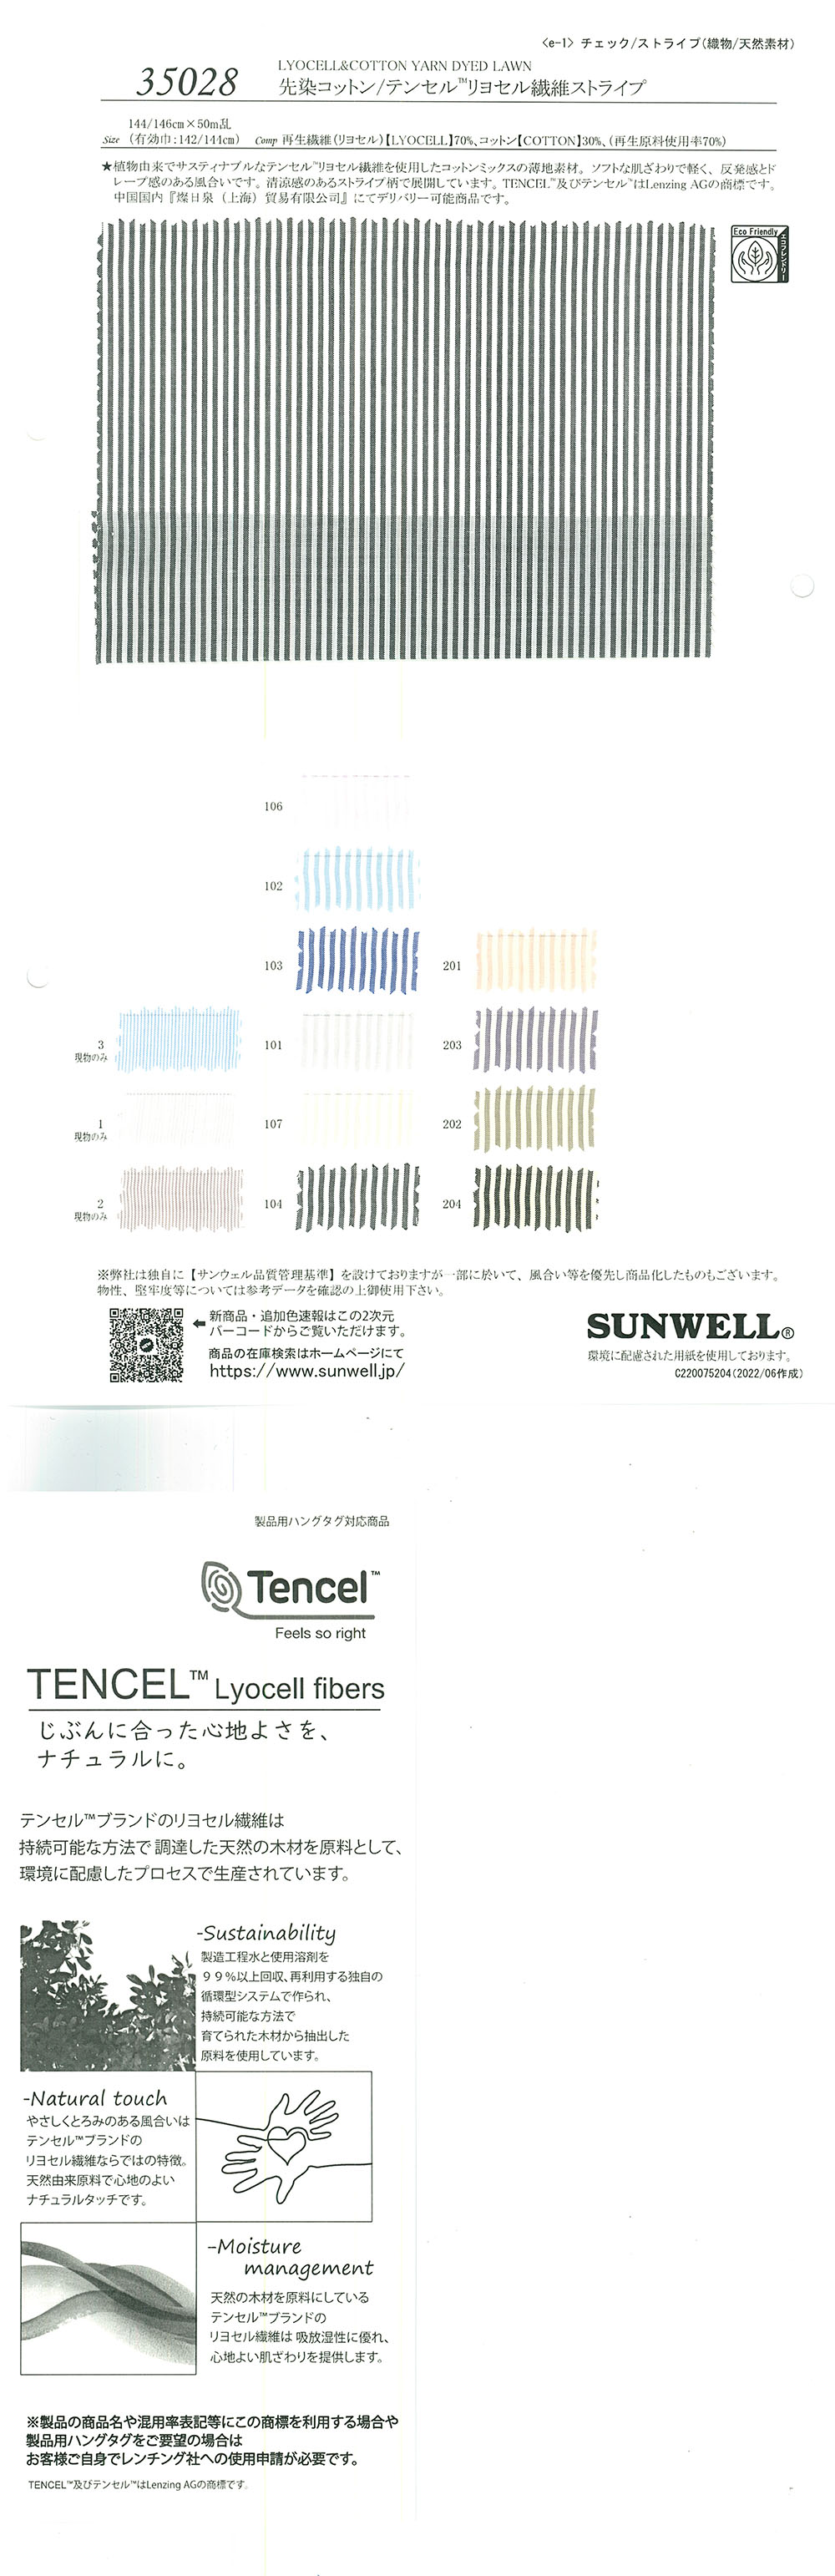 35028 色织棉/Tencel(TM) 莱赛尔纤维条纹[面料] SUNWELL